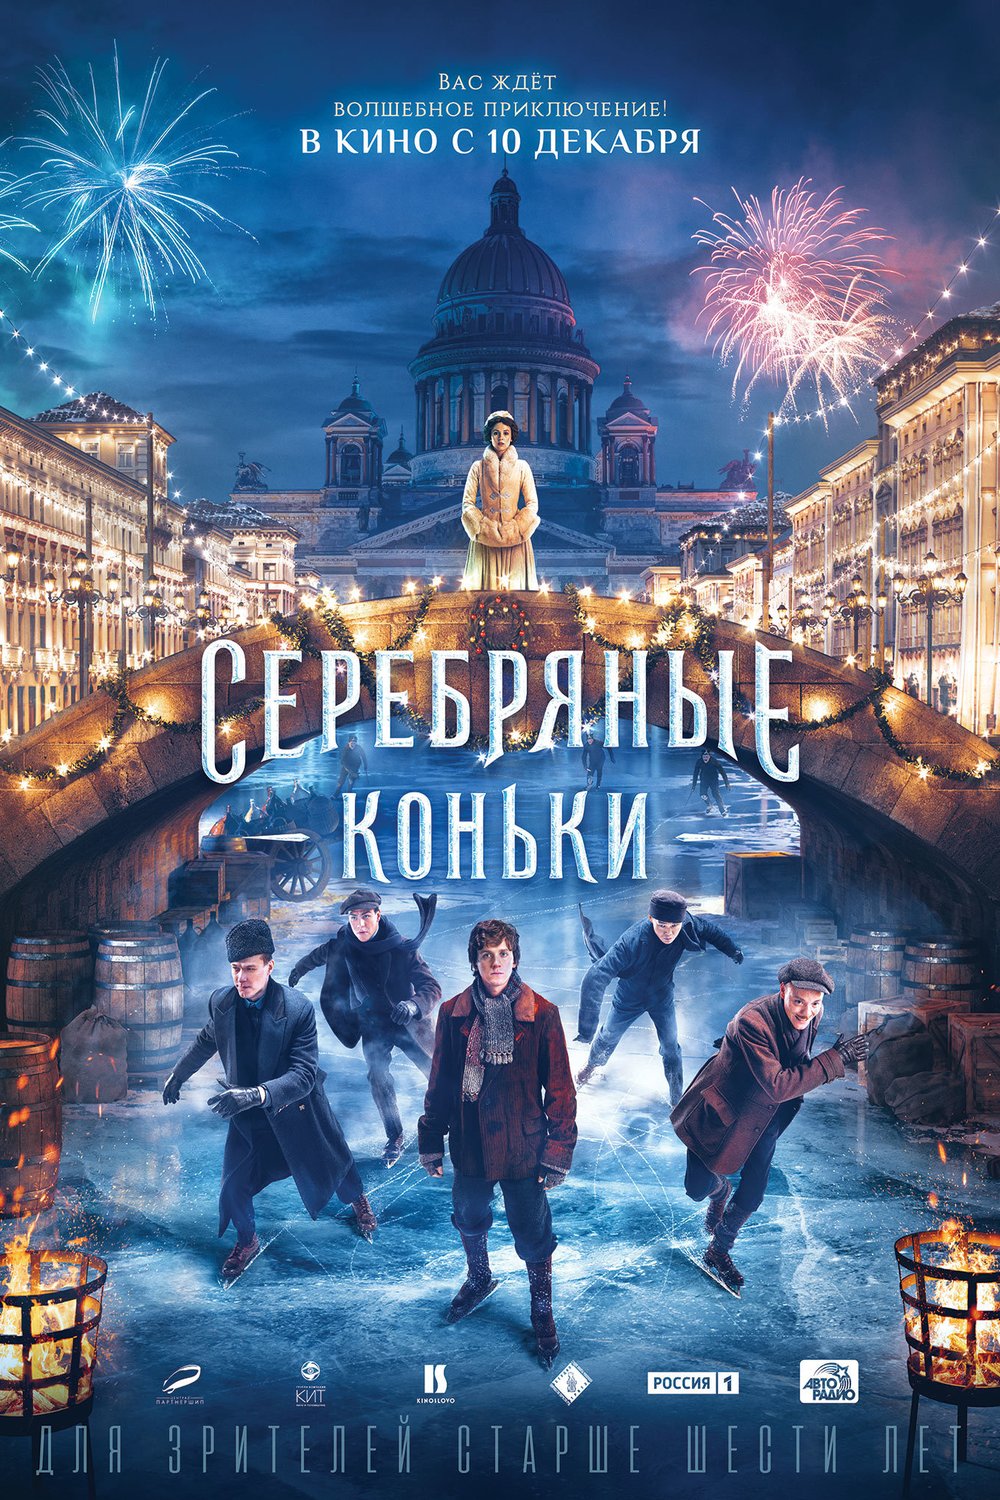 L'affiche originale du film Silver Skates en russe